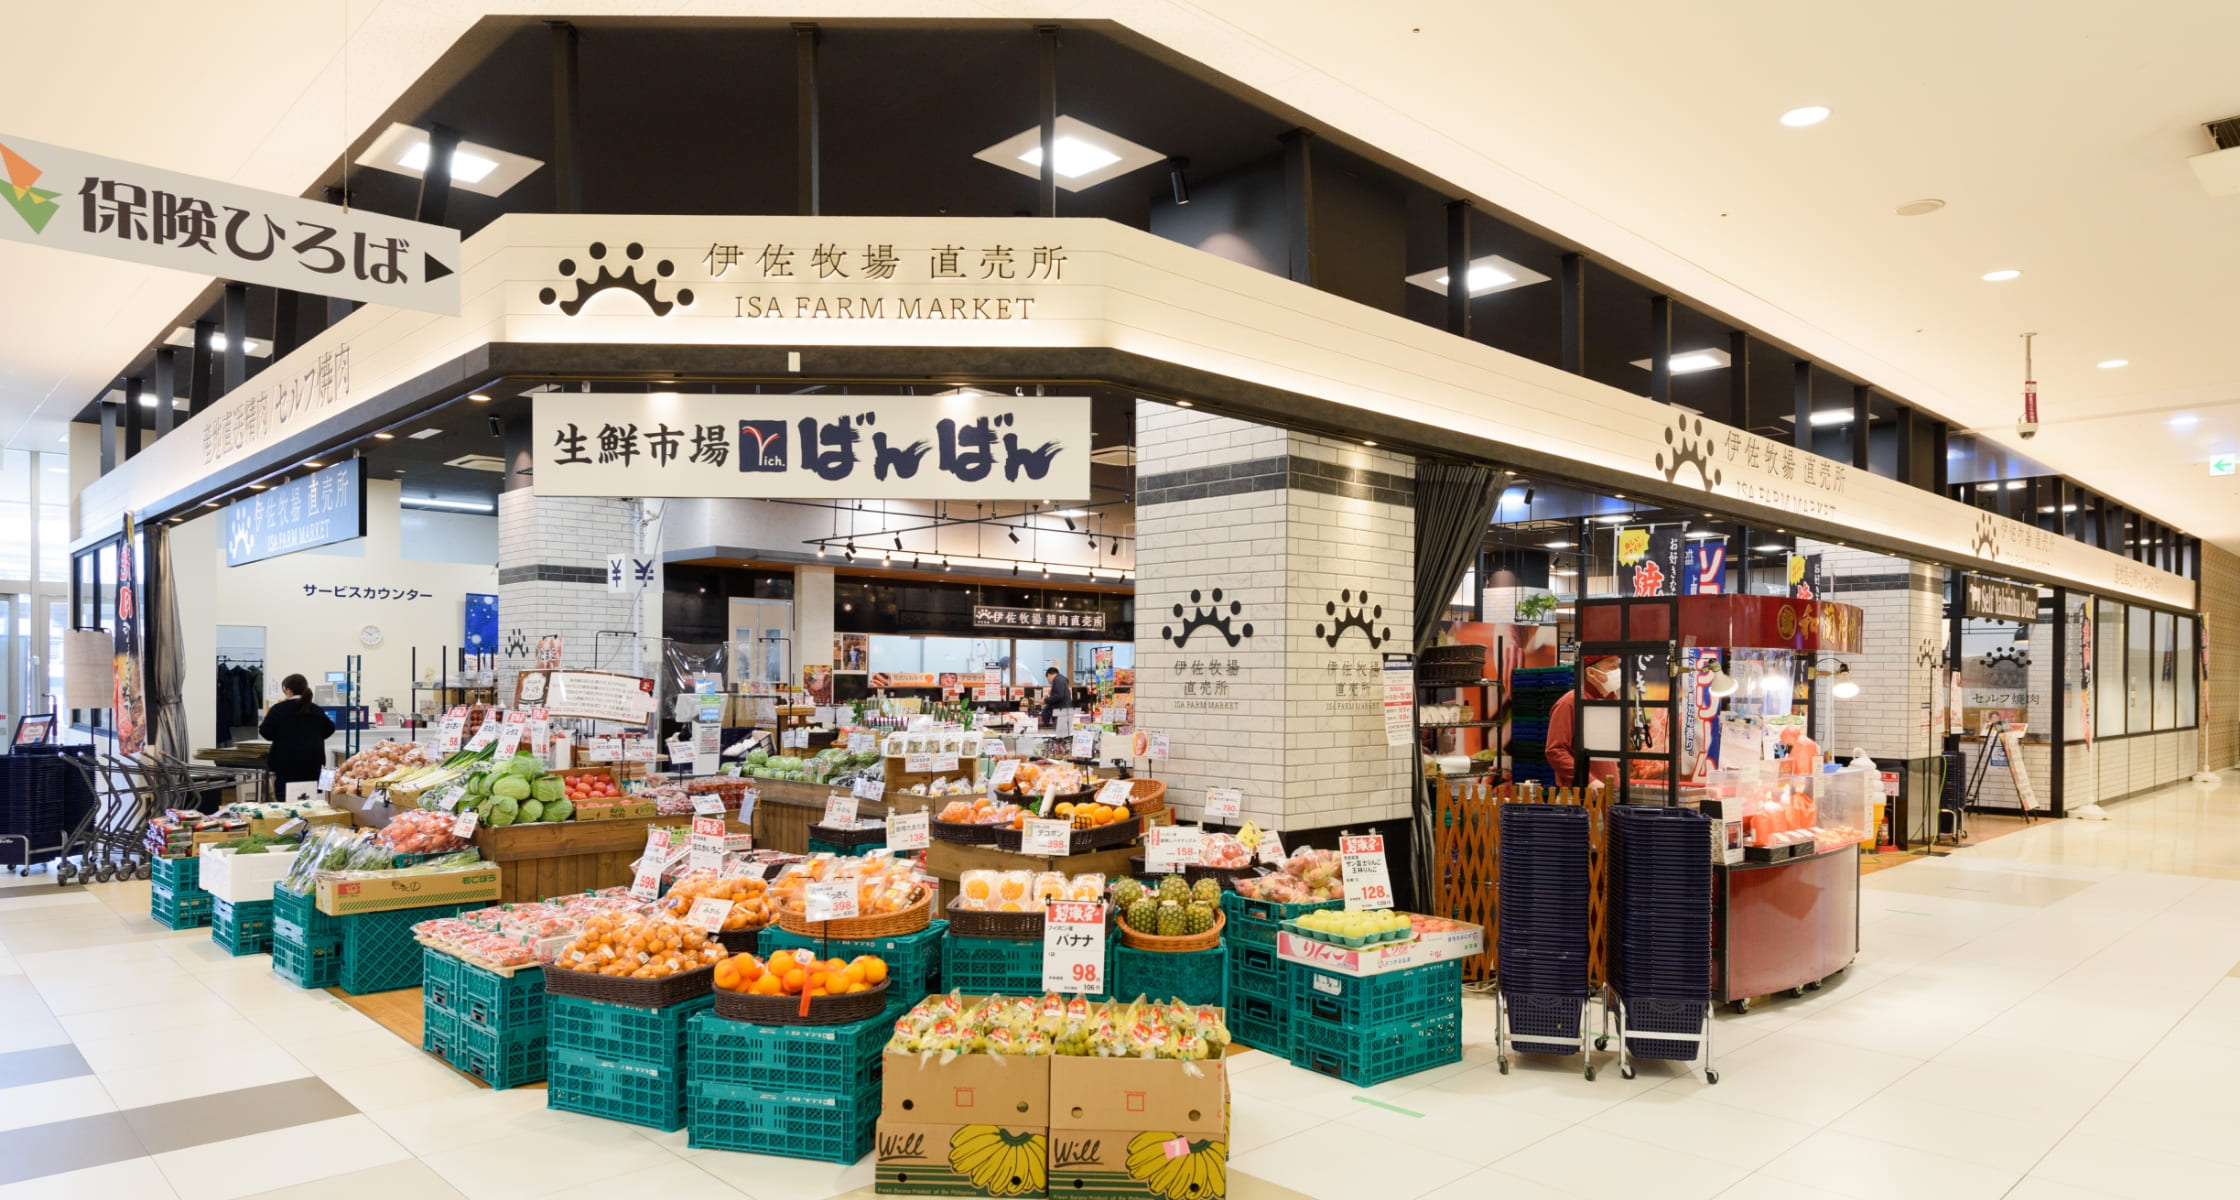 生鮮市場richばんばん貝塚店の特徴